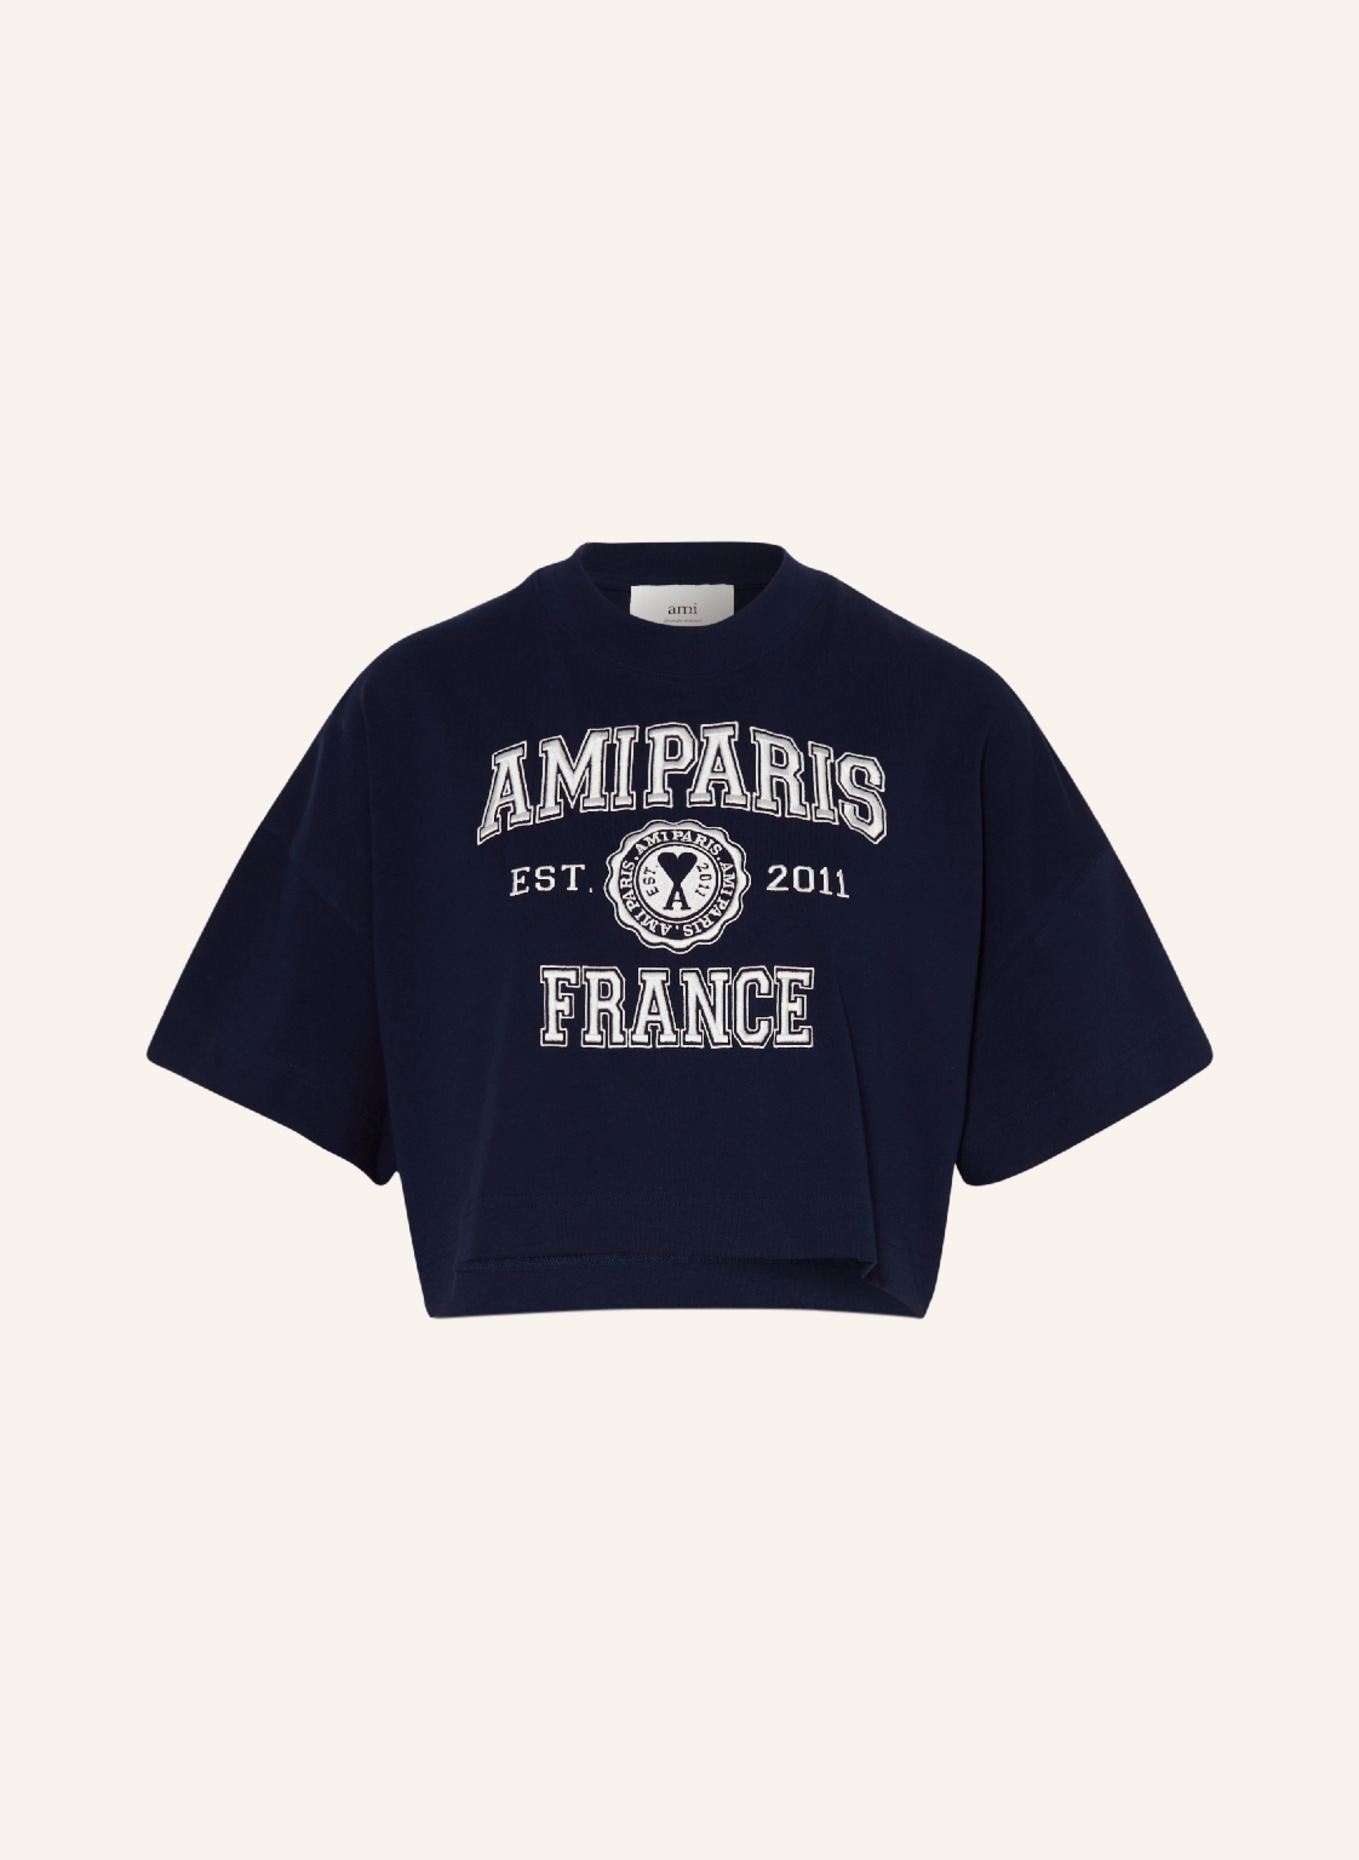 AMI PARIS Cropped-Shirt, Farbe: DUNKELBLAU (Bild 1)